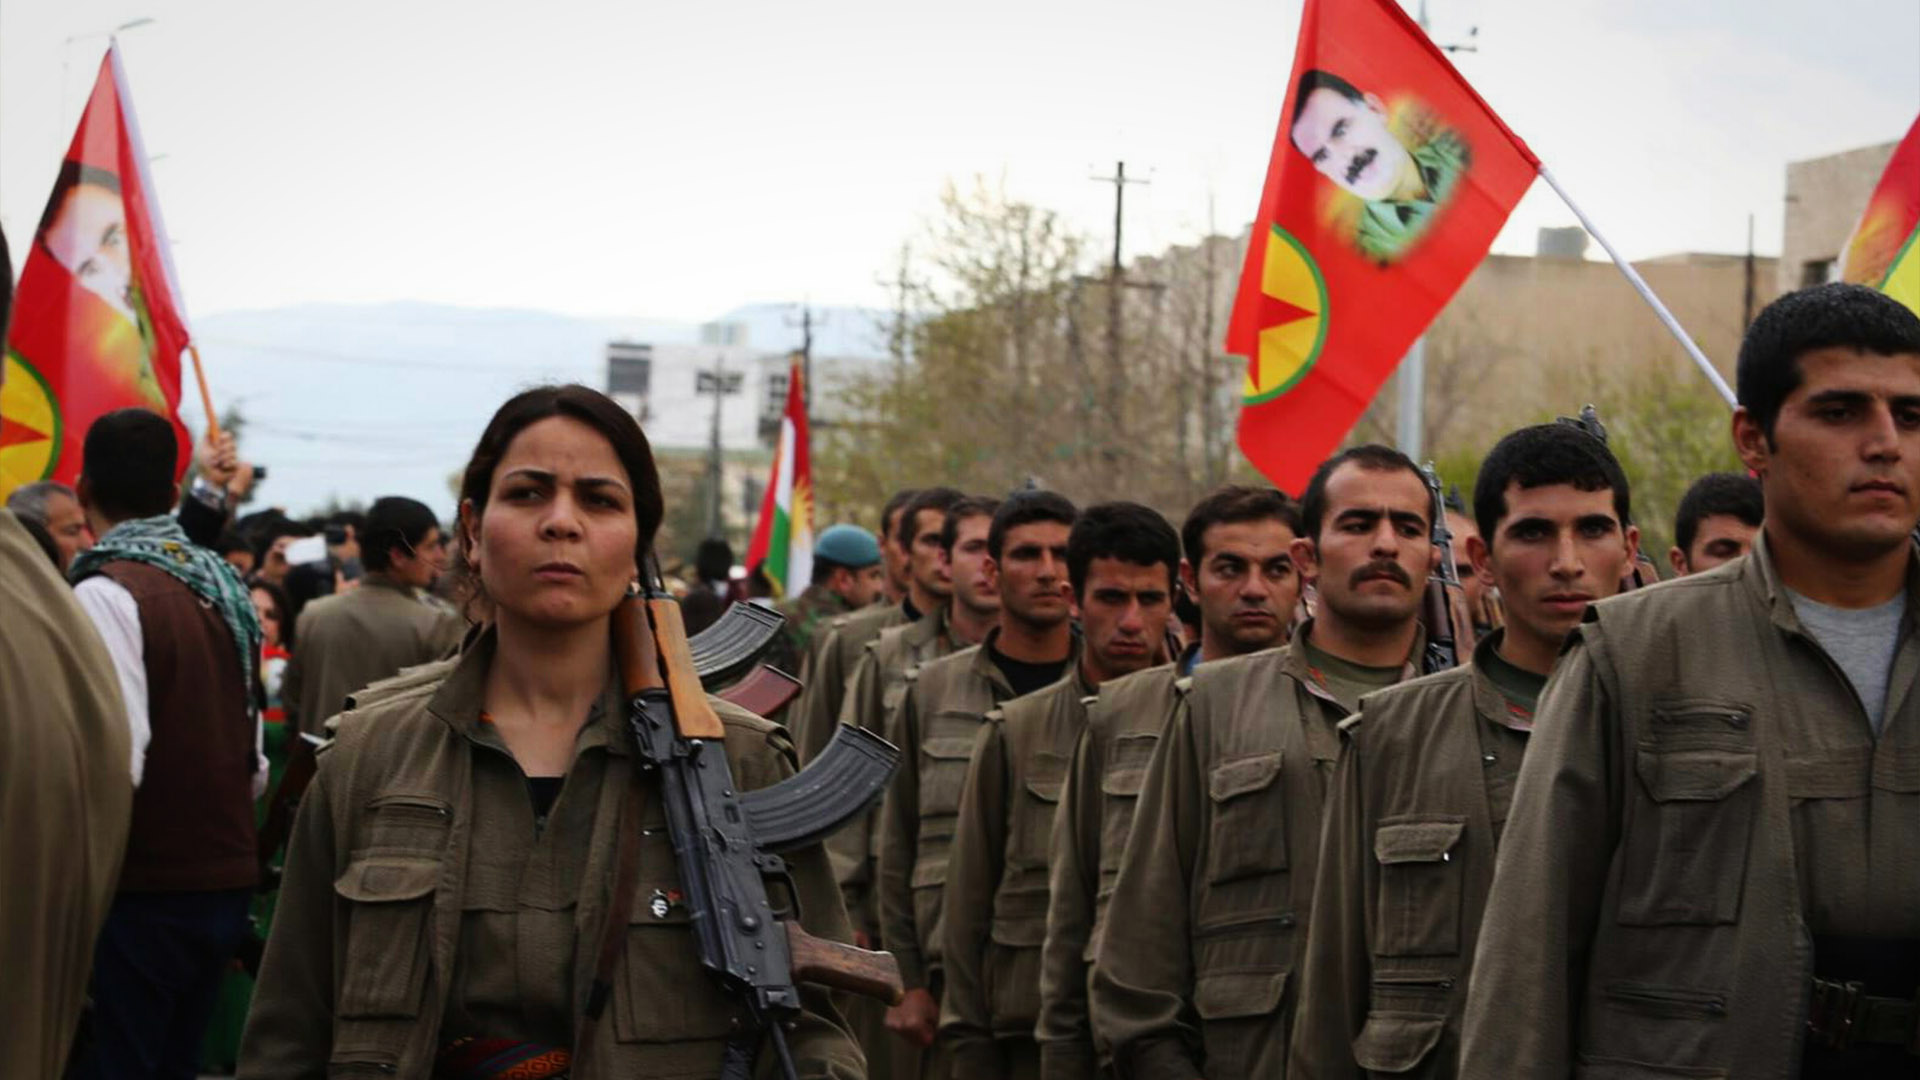 Ο κύβος ερρίφθη: Πρώτες ελεύθερες εκλογές στην βόρεια κουρδική Συρία – Το Κουρδιστάν γεννιέται